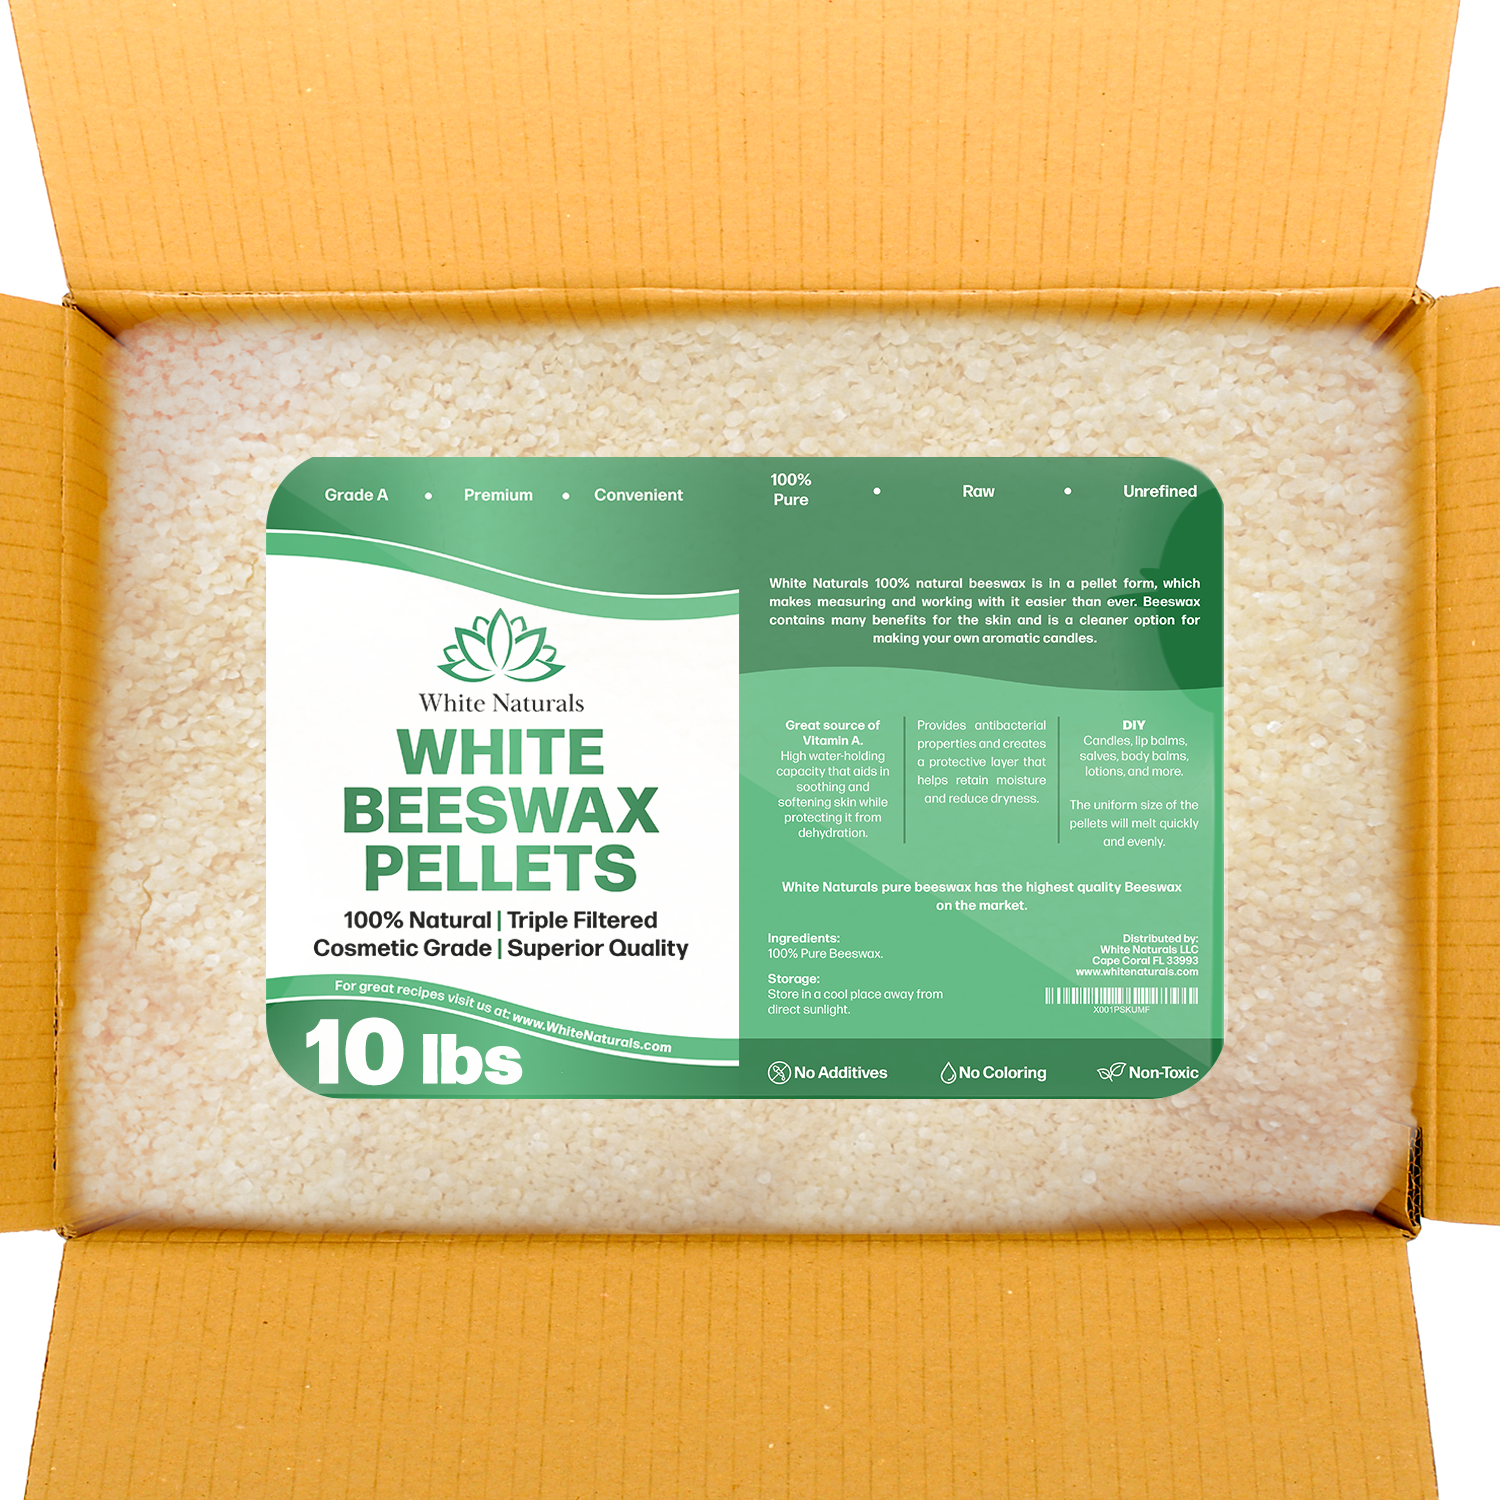 White Beeswax - food grade - British Wax